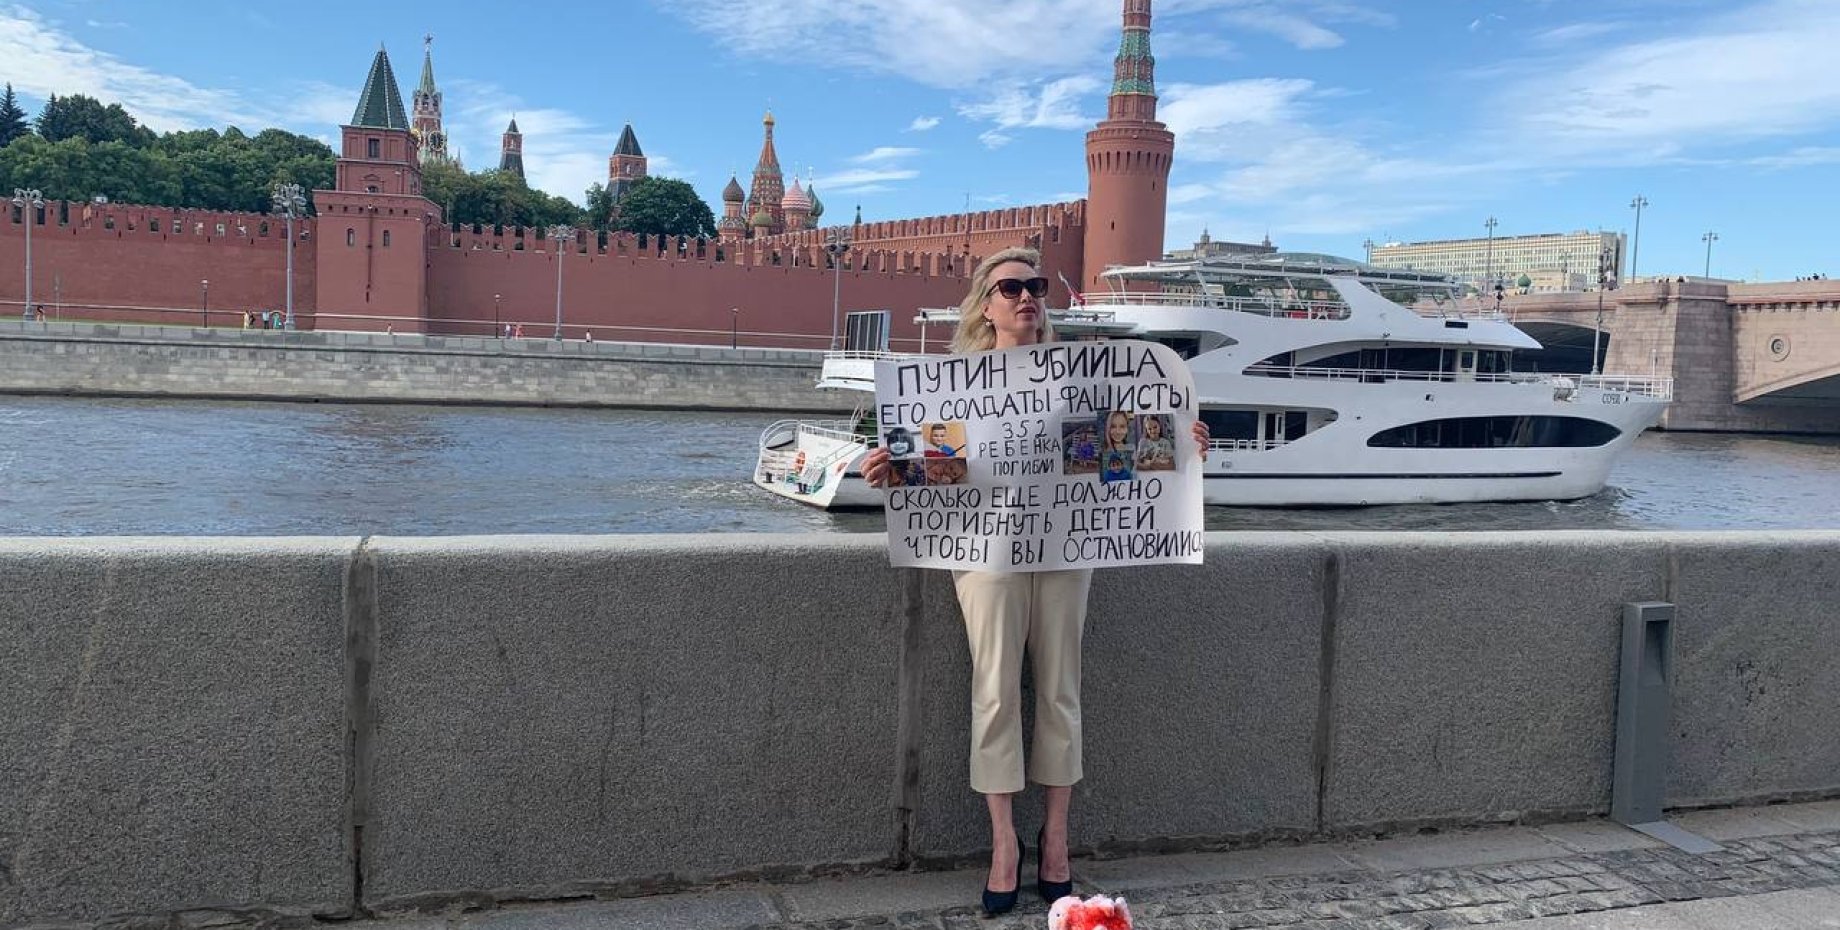 1 канал 1 июля. Овсянникова с плакатом на набережной Москвы. Фотосессия возле Кремля. Софийская набережная.